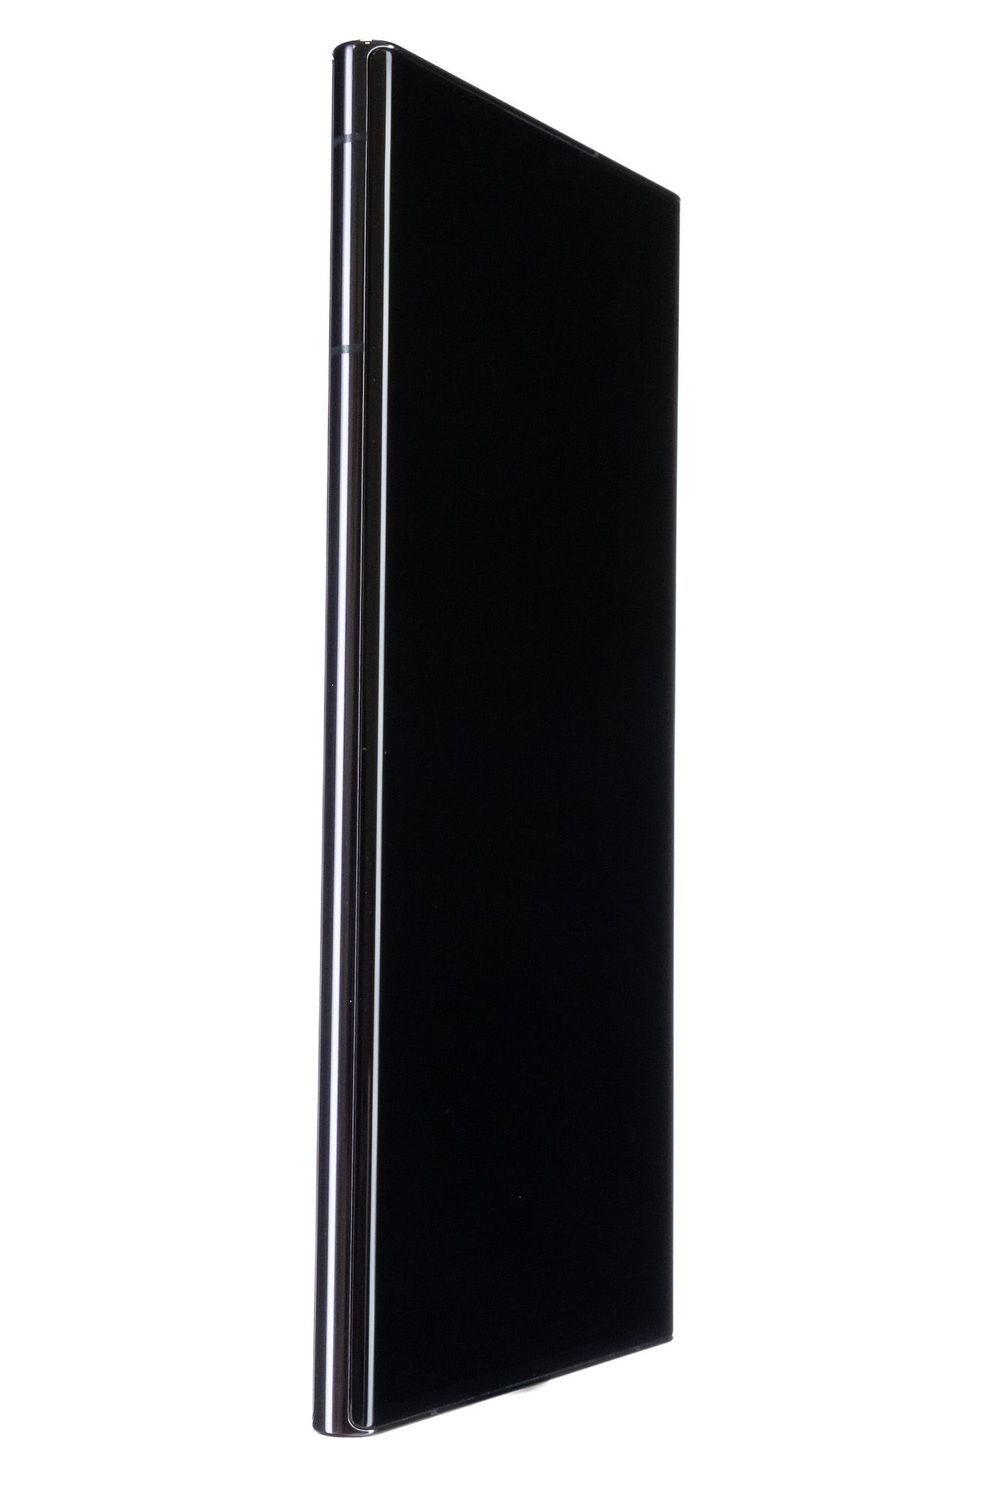 Κινητό τηλέφωνο Samsung Galaxy S22 Ultra 5G Dual Sim, Phantom Black, 1 TB, Foarte Bun